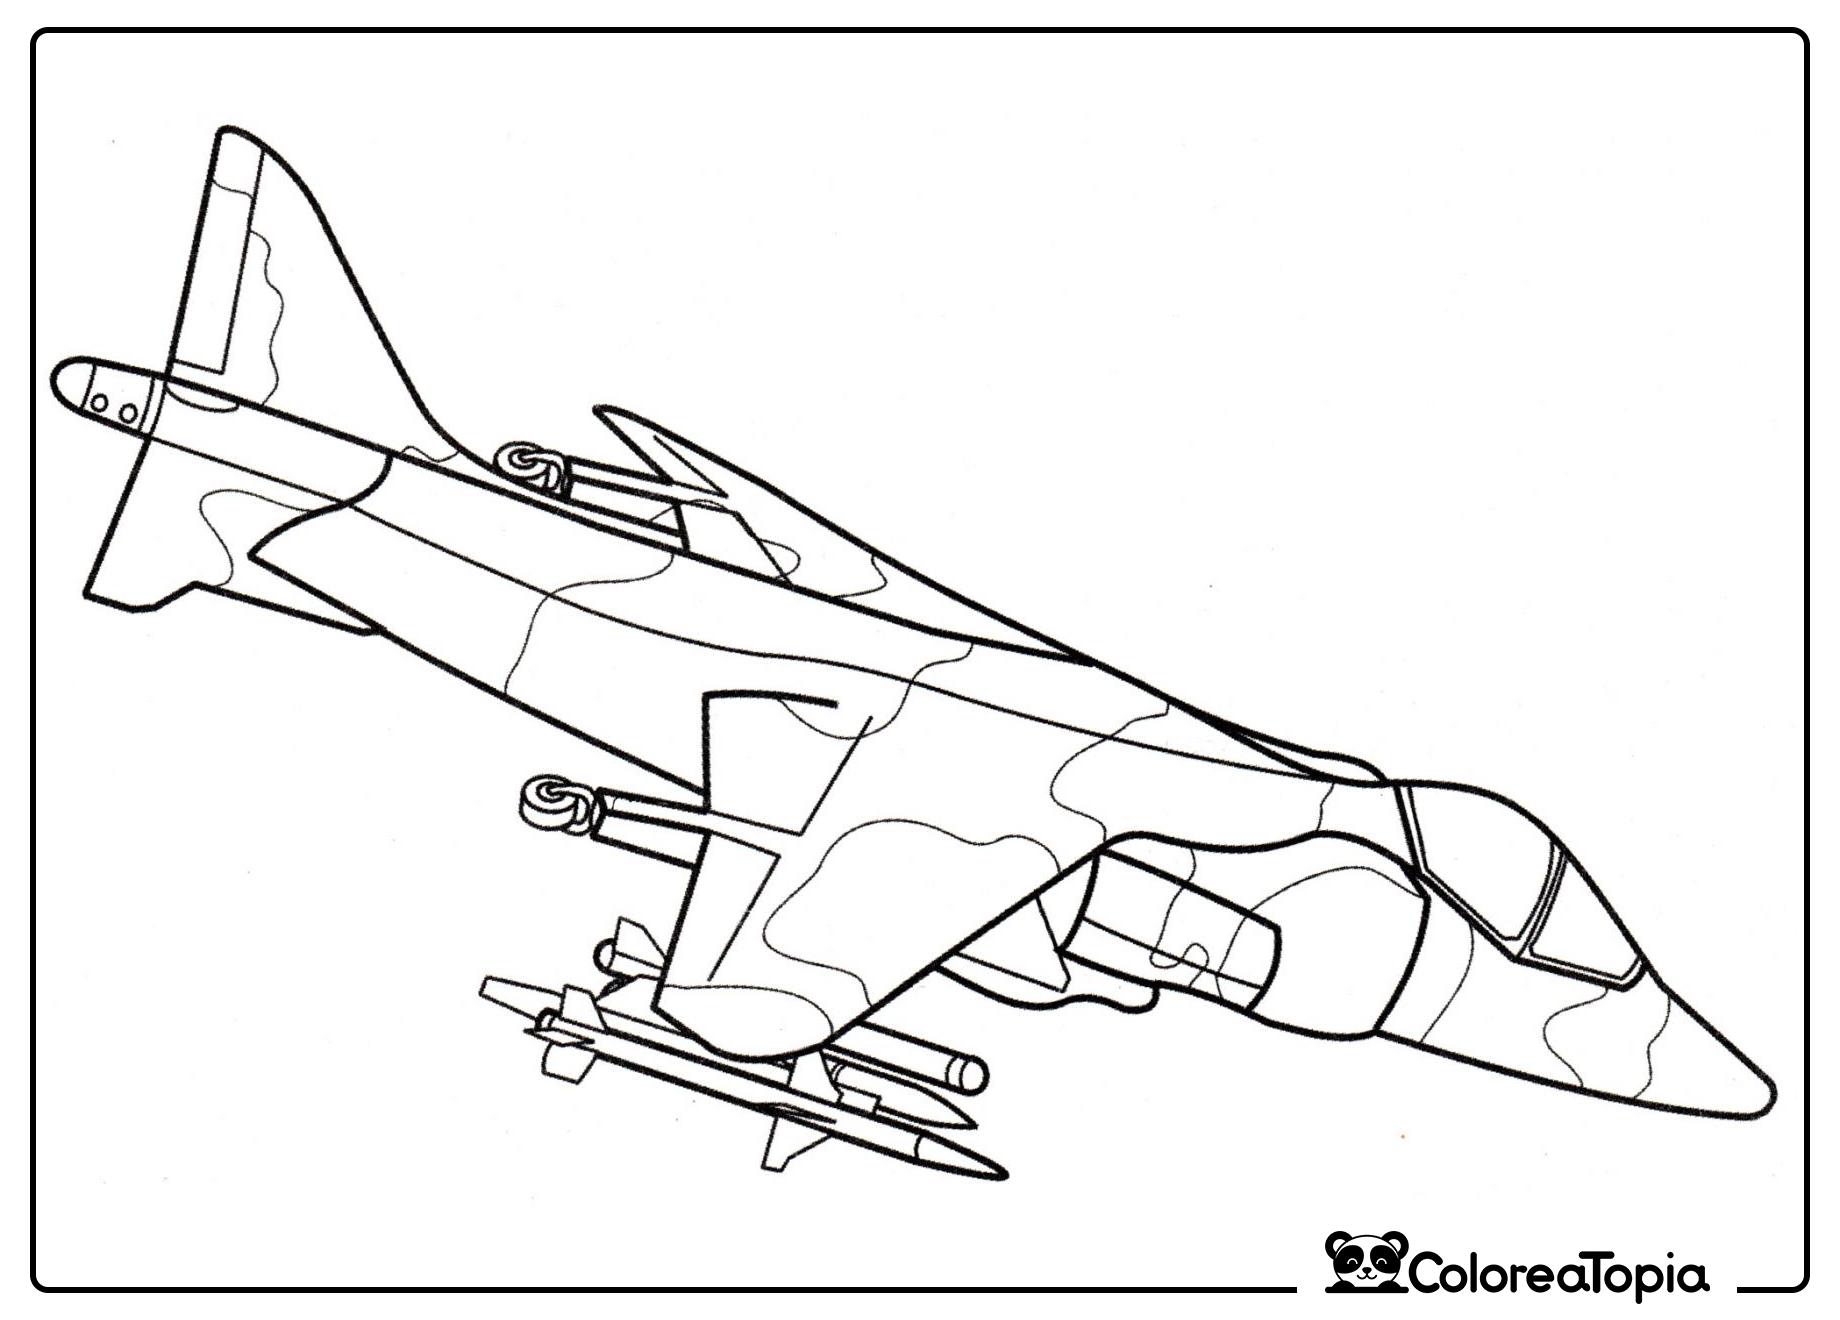 Página para colorear del Harrier AV-8A - dibujo para colorear